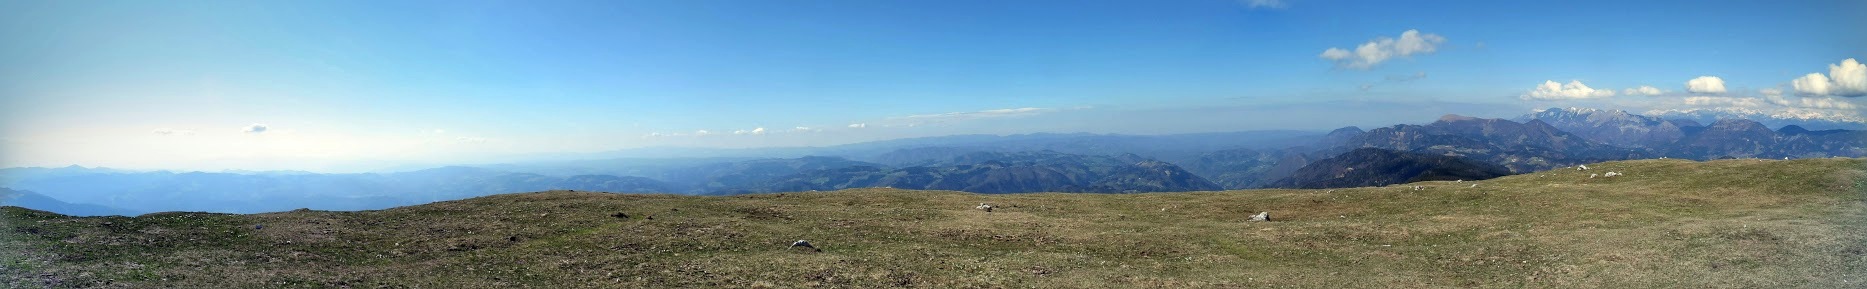 Z vrha se ponuja panoramski razgled na najvišje slovenske gore v skupinah Julijskih Alp, Karavank in Kamniško Savinjskih Alp ...